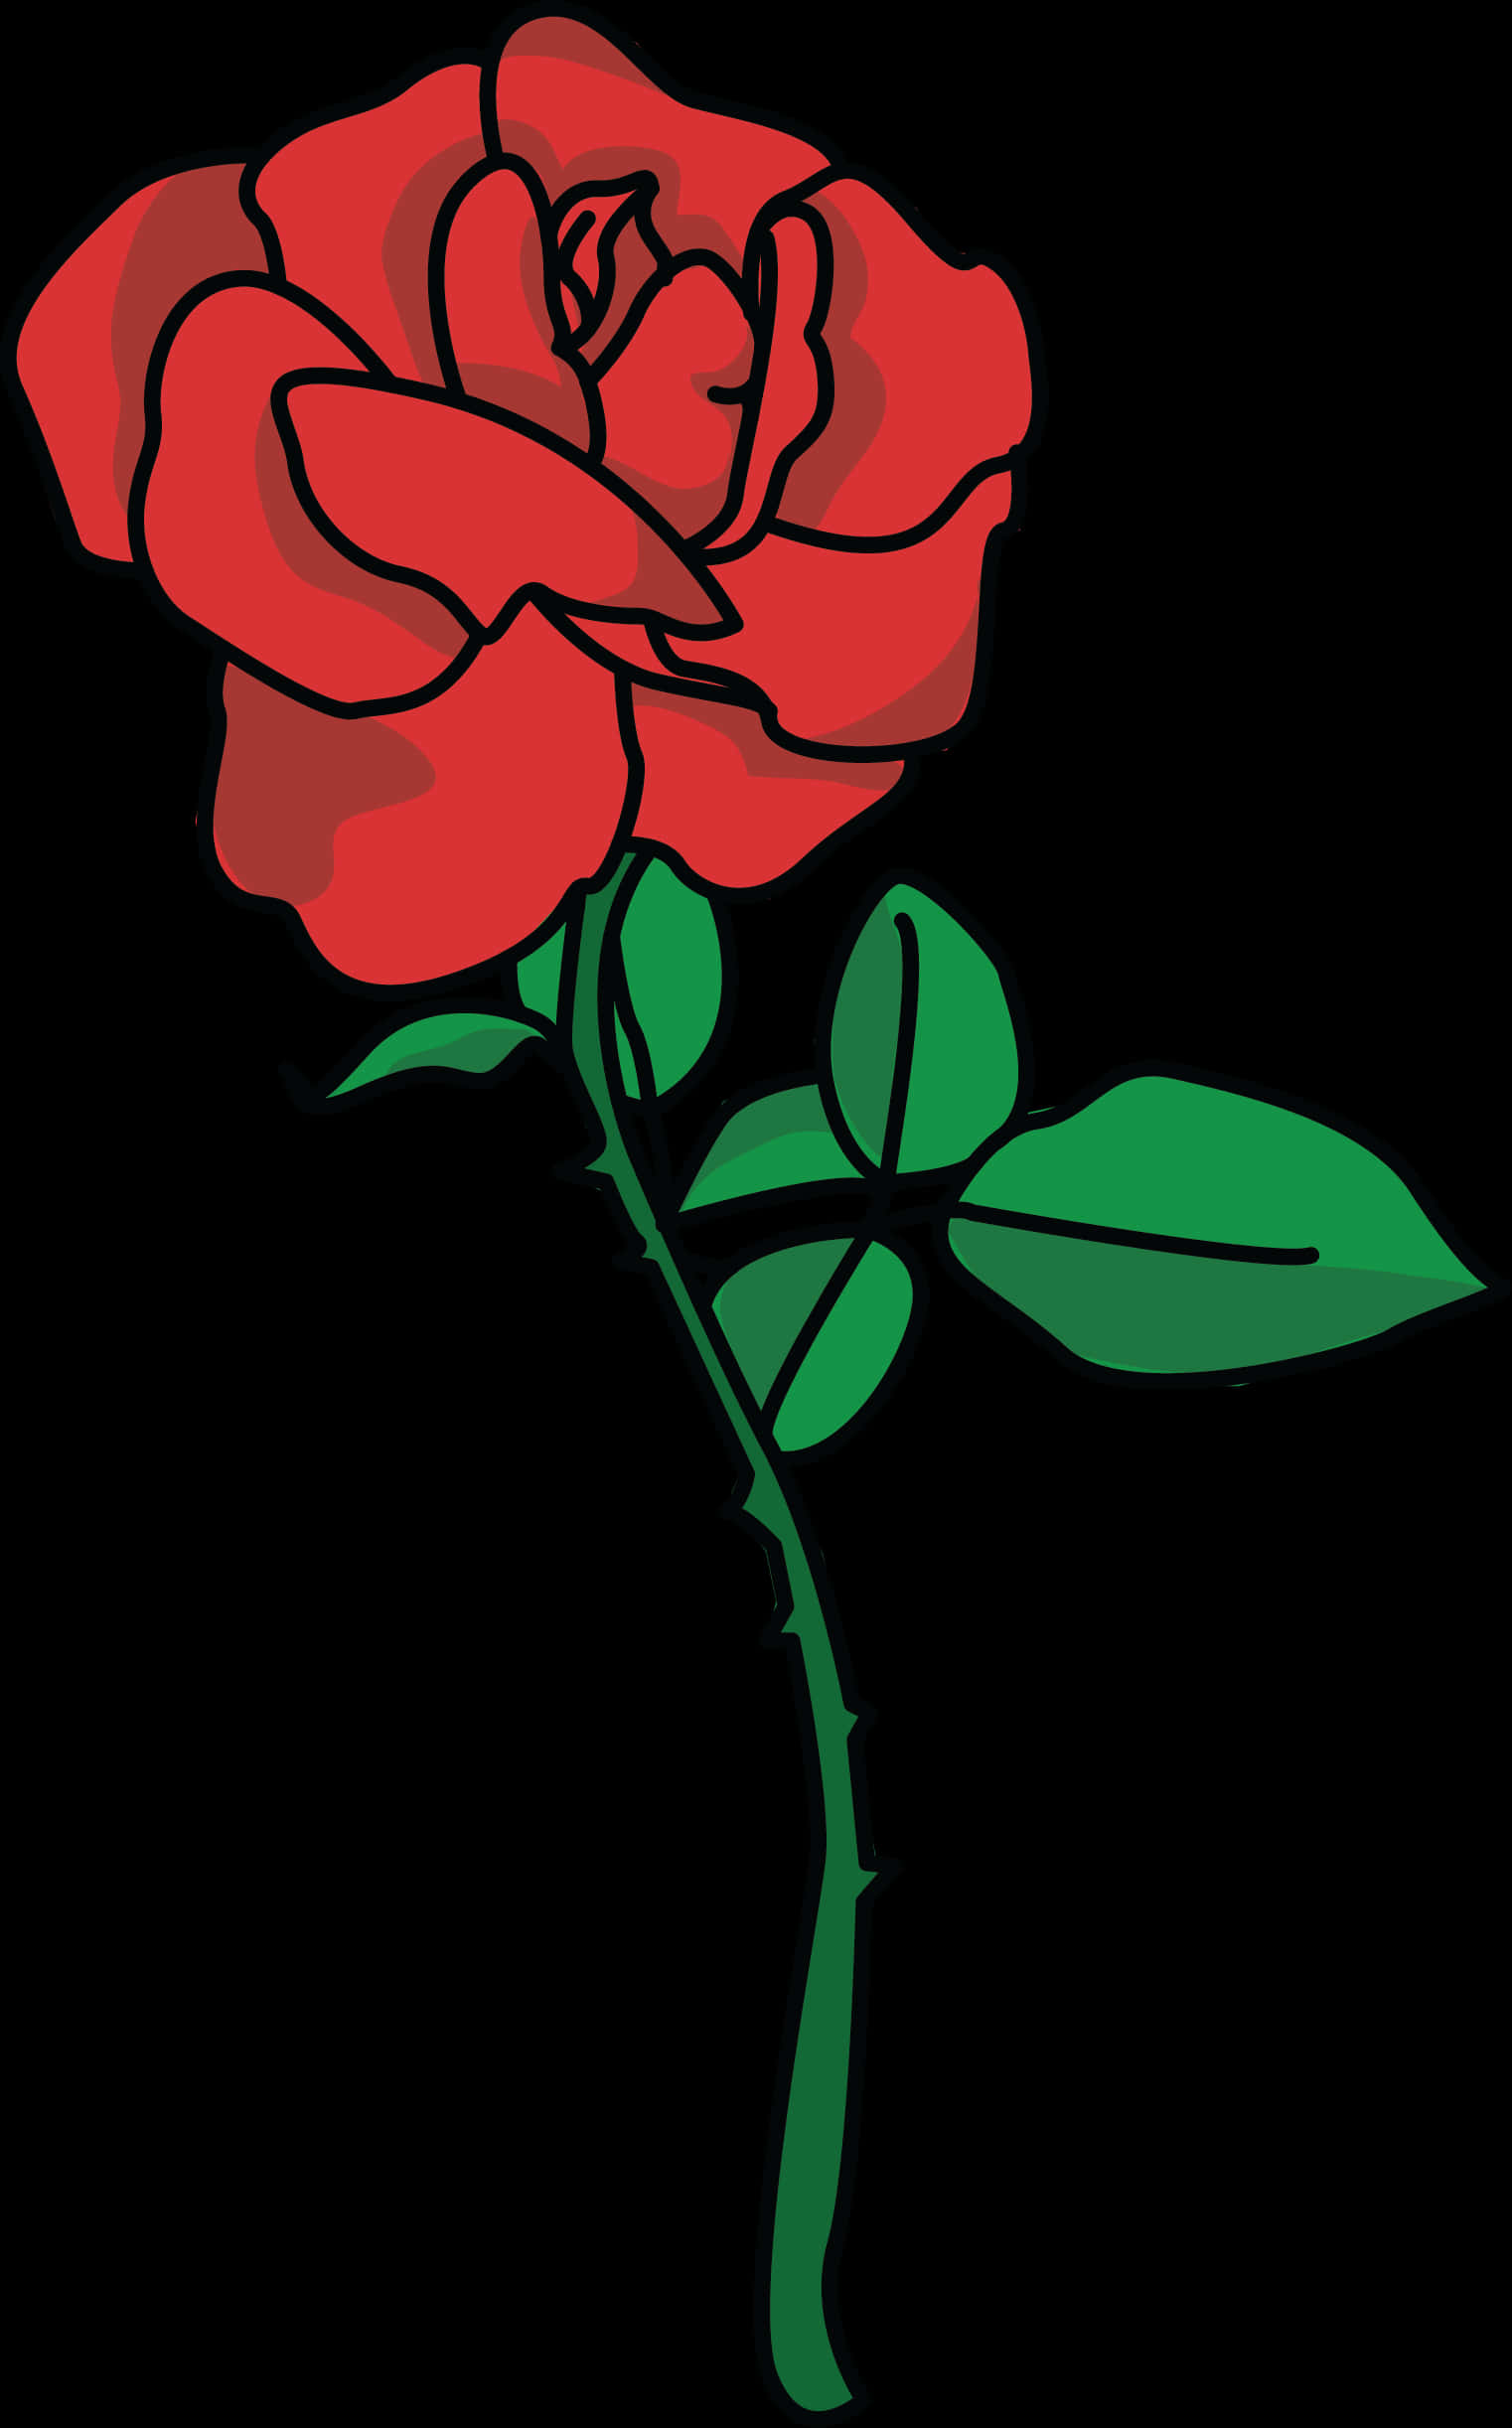 Free Rose Petal Clipart - Roses Plants Clip Art, Hd Png Download